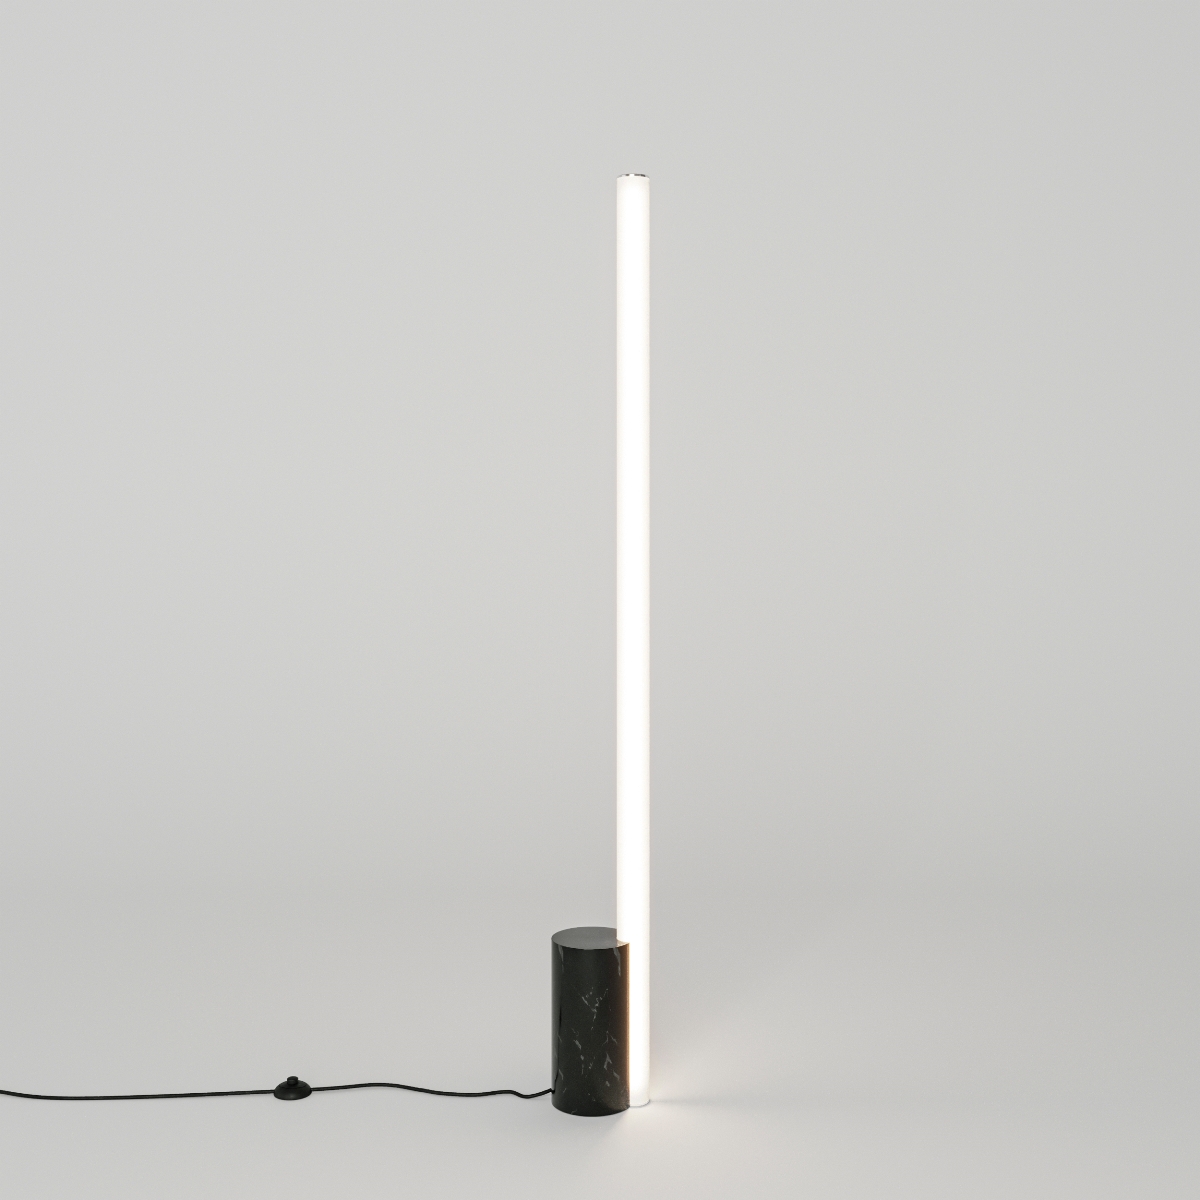 Llum Floor lamp.丨NEEN DESIGN STUDIO